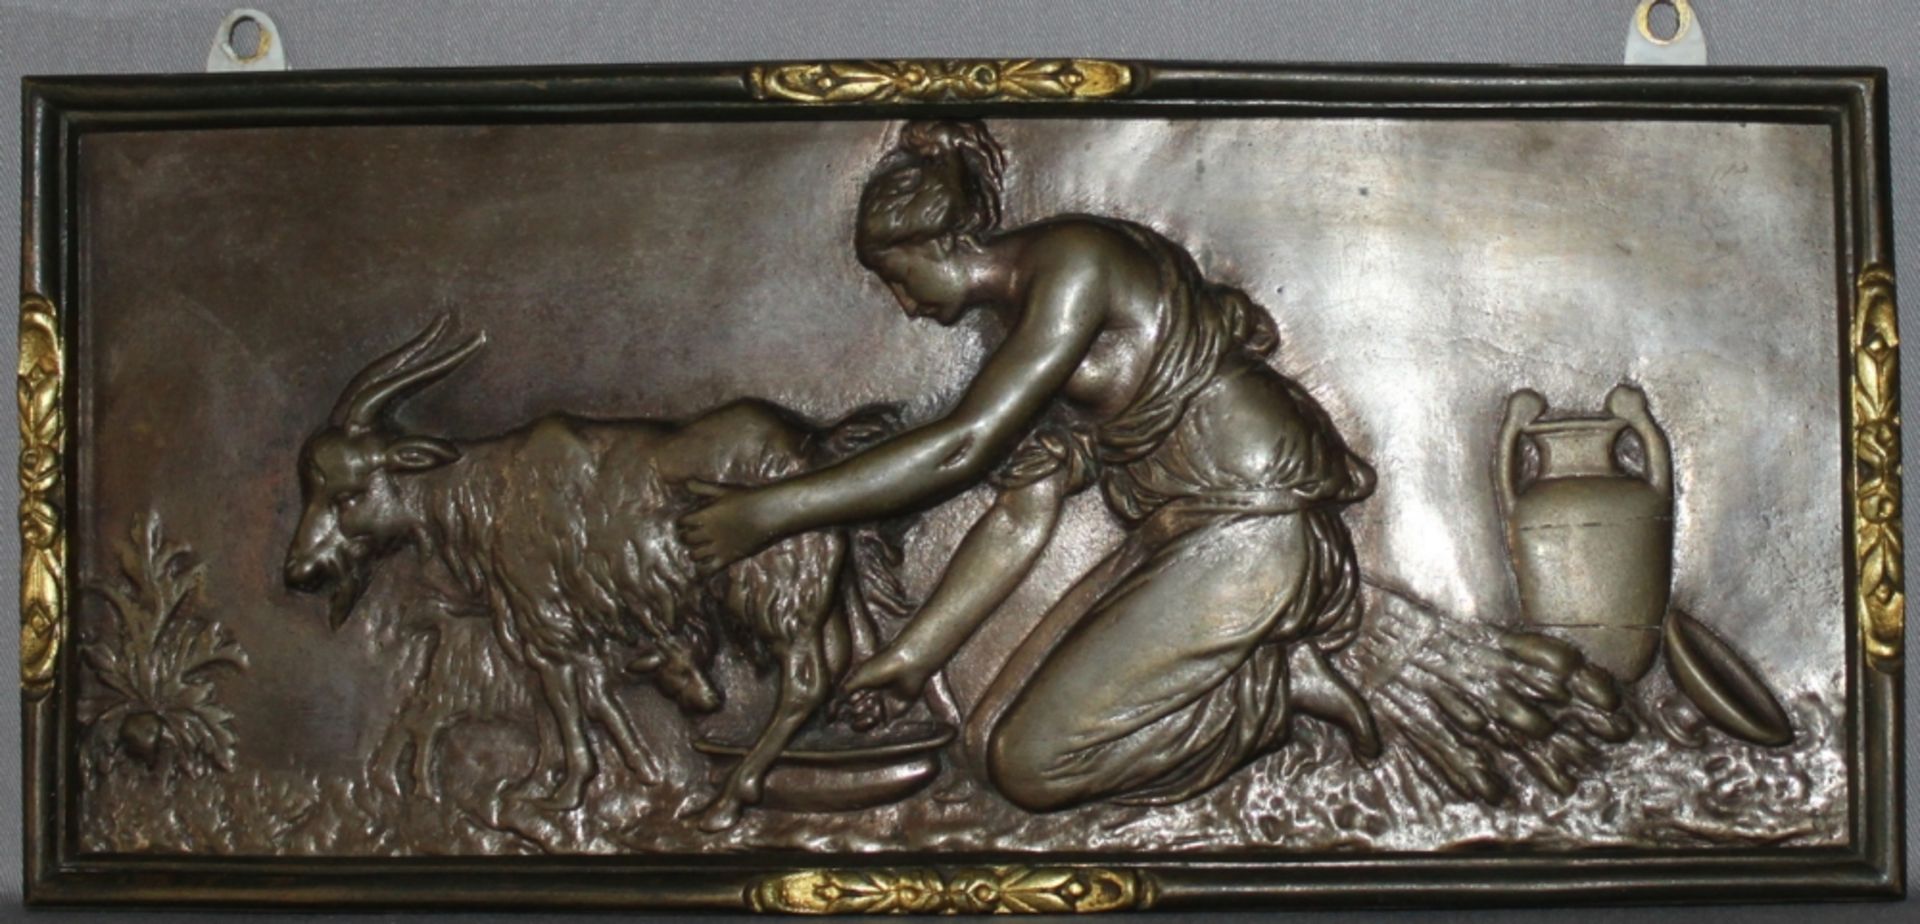 Metall. Bronzerelief. Die Ziegenmelkerin. Bronzerelief aus der 1. Hälfte des 20. Jhrdts. Bildgröße